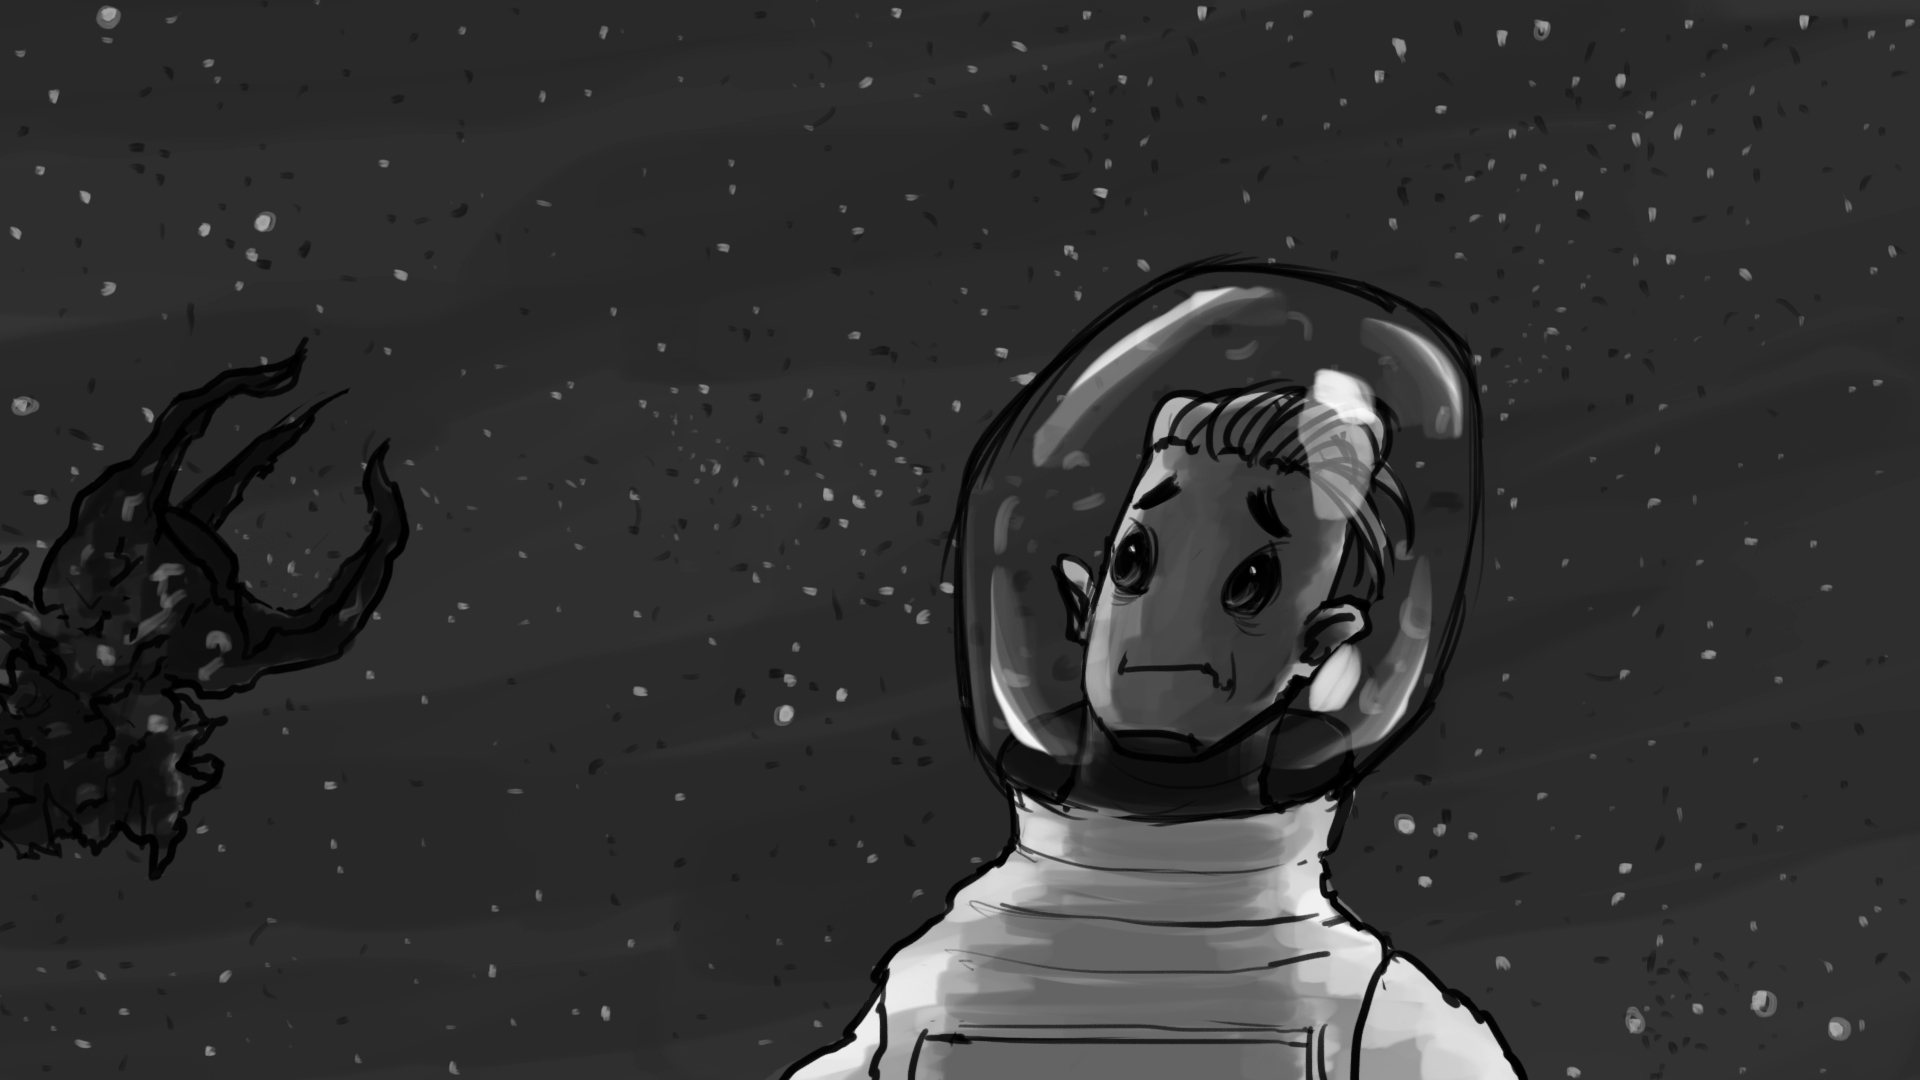 Rocket_Man_Storyboard_Artboard 28.jpg